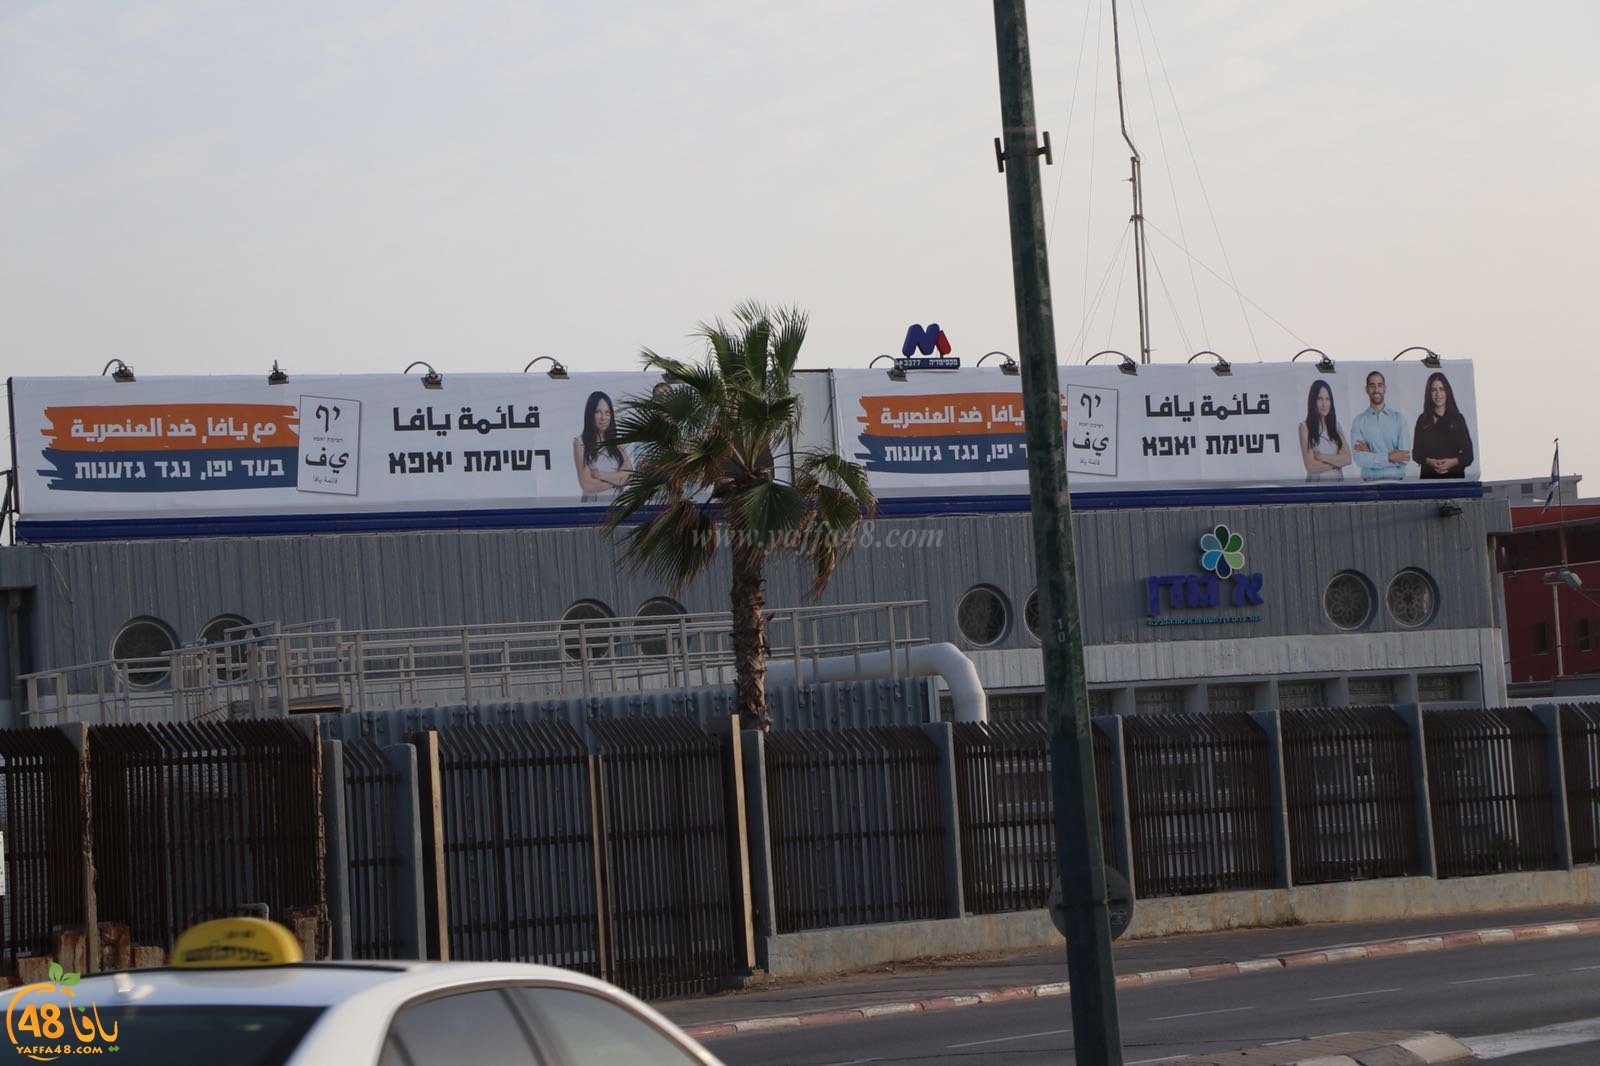 الليكود يحاول ضرب الحملة الانتخابية لقائمة يافا بإزالة لافتات كبيرة تابعة للقائمة